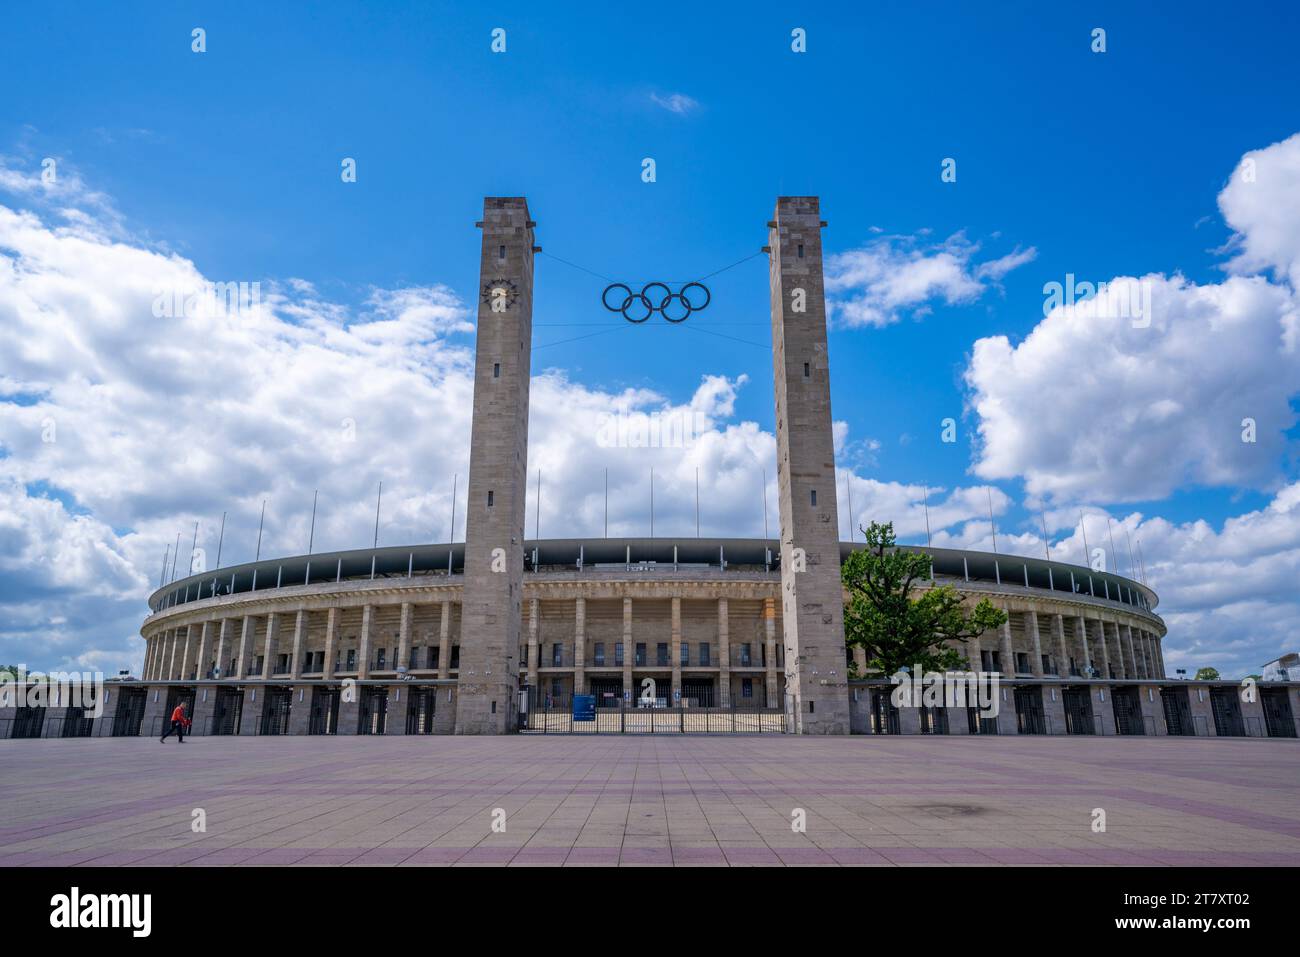 Vue de l'extérieur de l'Olympiastadion Berlin, construit pour les Jeux Olympiques de 1936, Berlin, Allemagne, Europe Banque D'Images